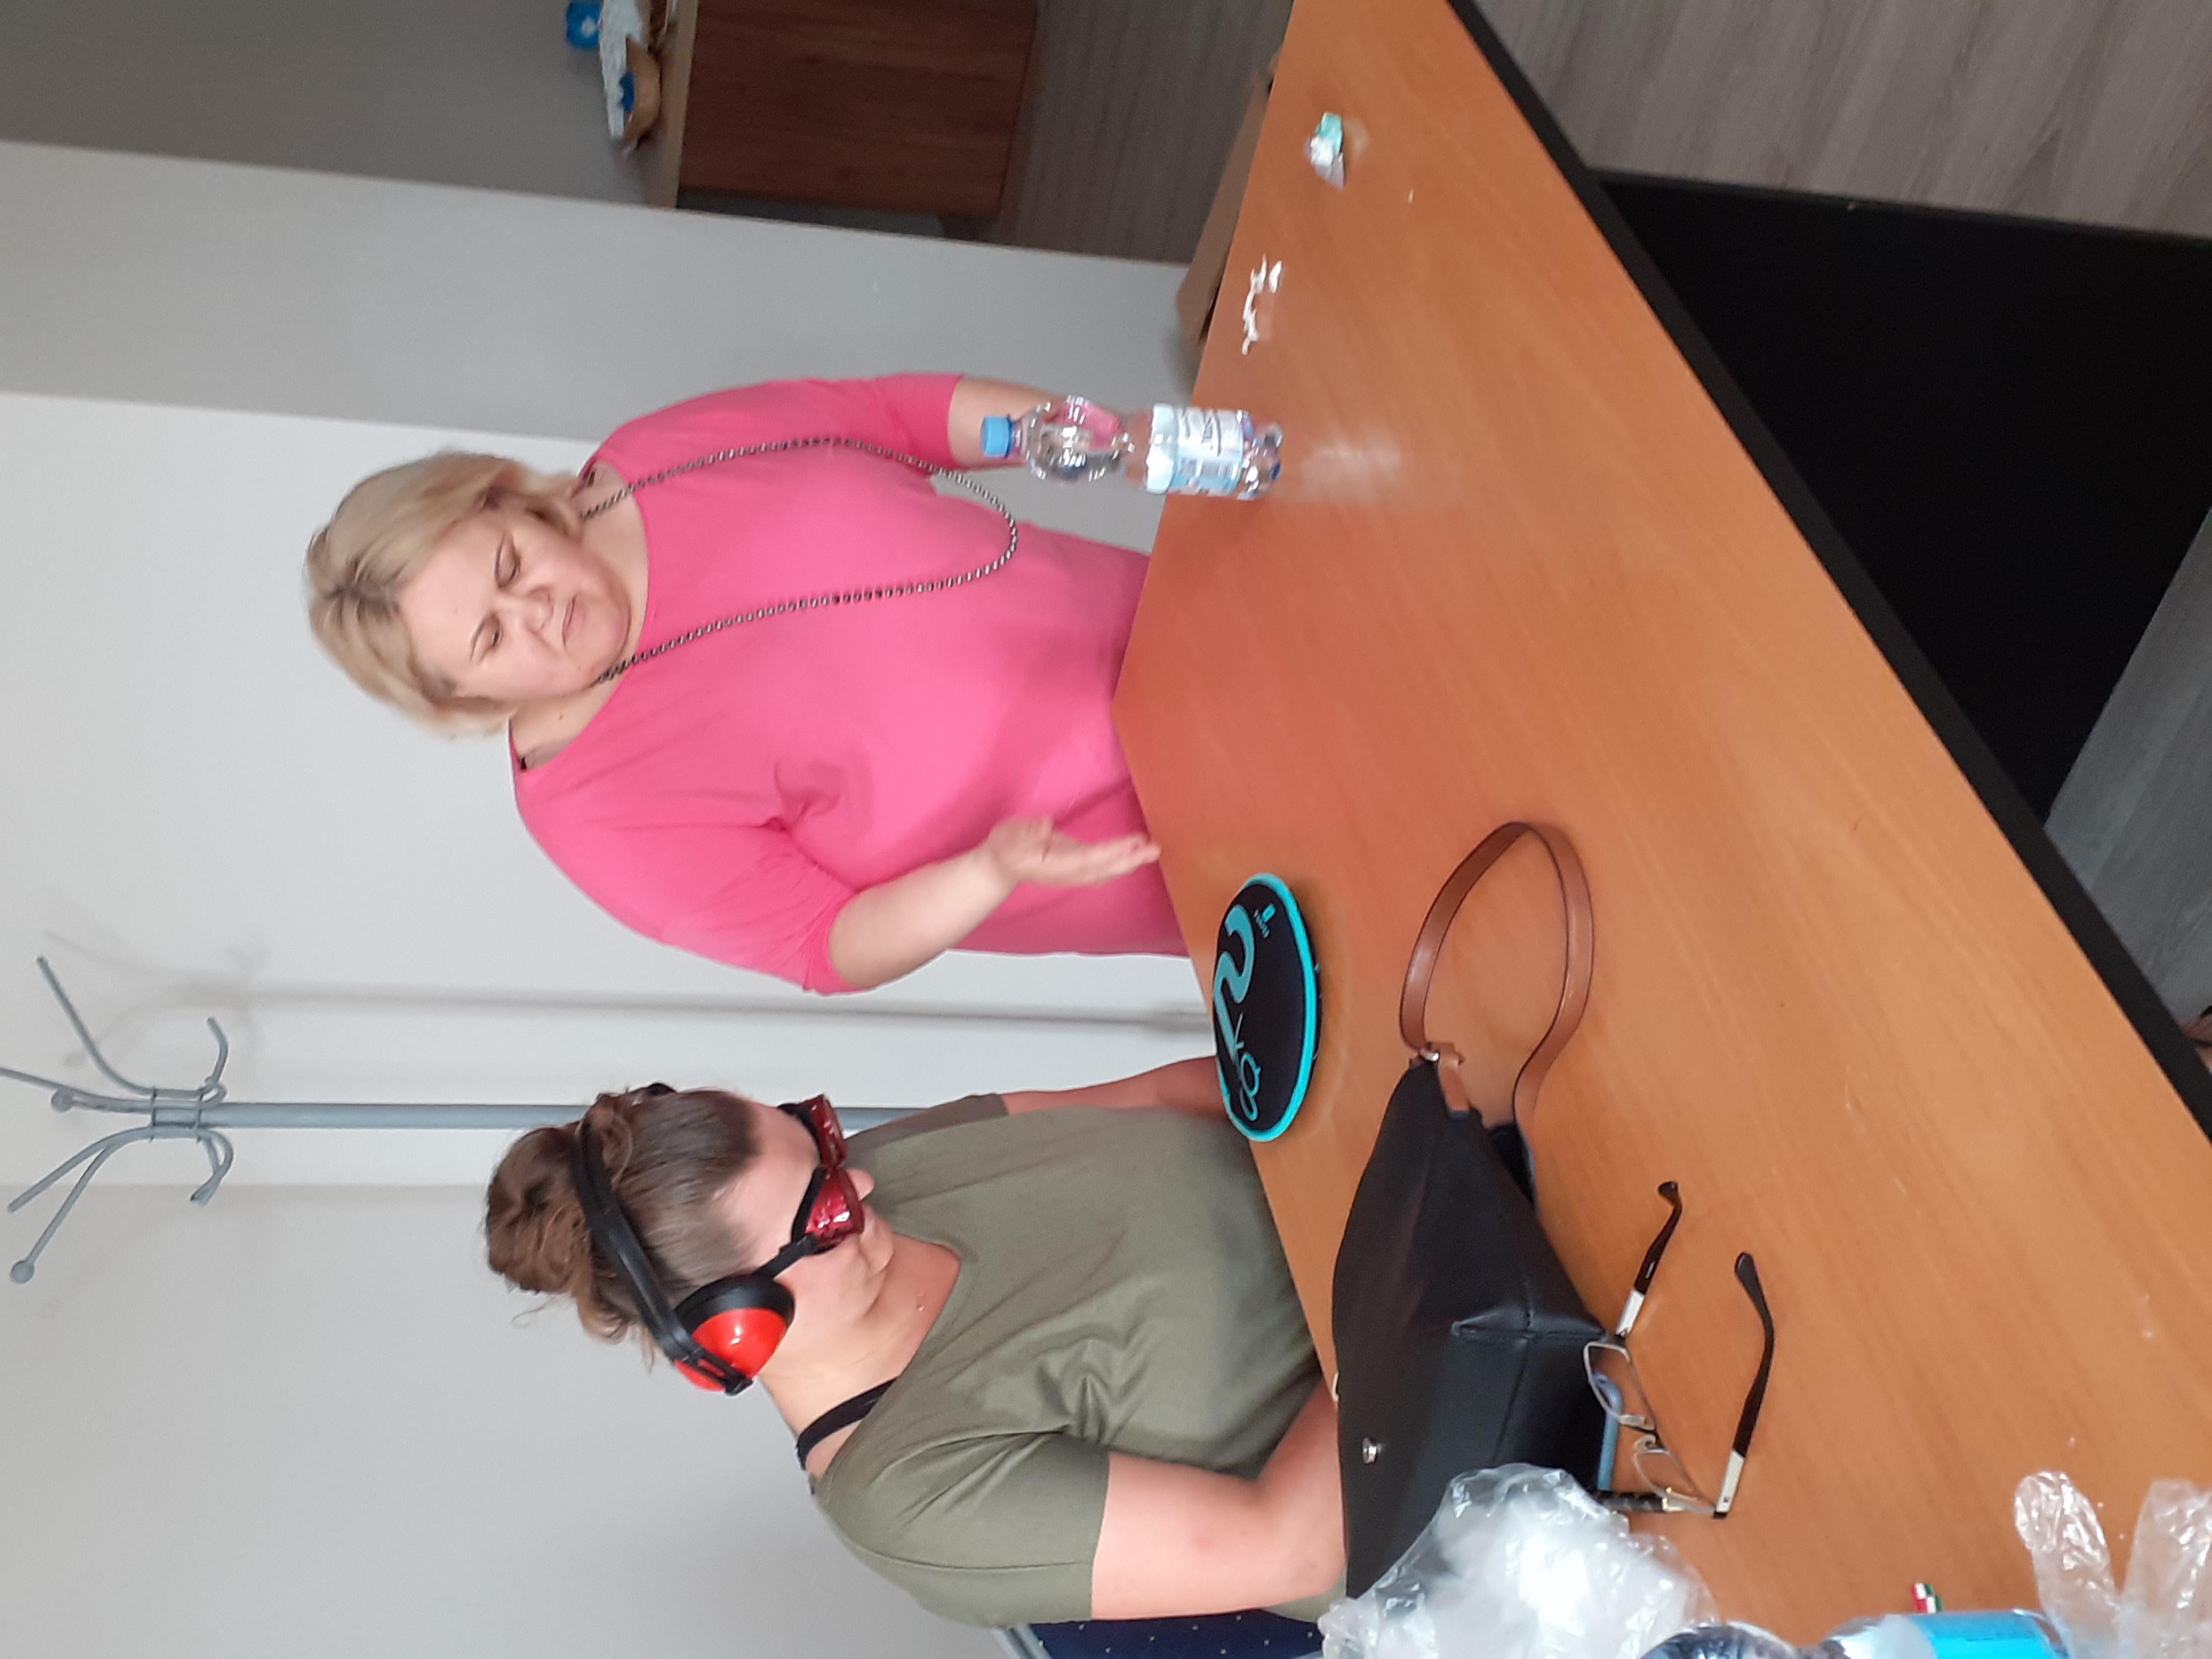 Uczestniczka szkolenia w specjalnych okularach i słuchawkach, które miały na celu przybliżyć codzienne problemy osób z dysfunkcjami.